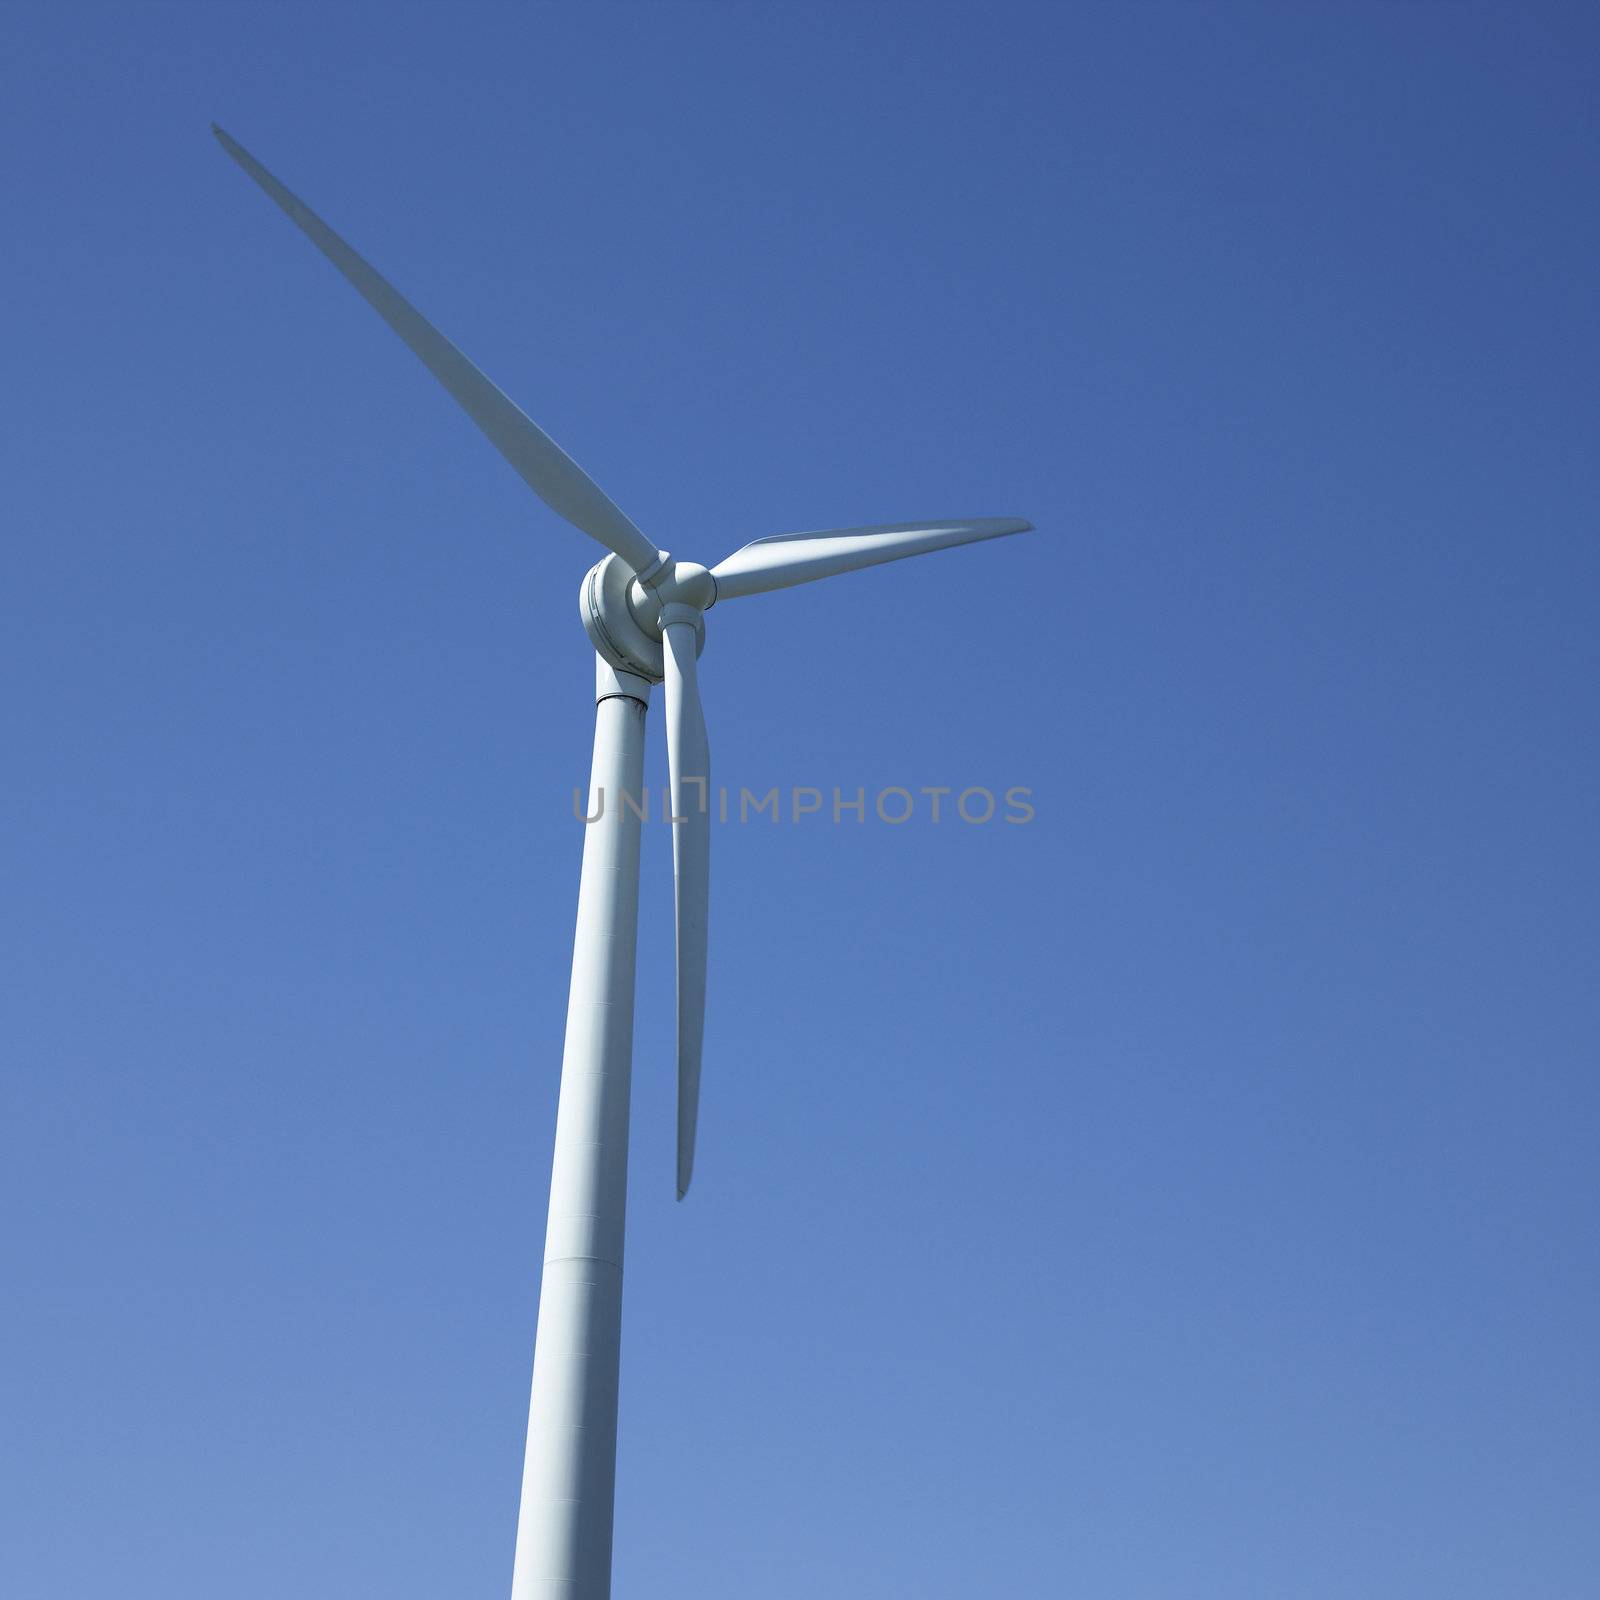 Wind turbine and blue sky